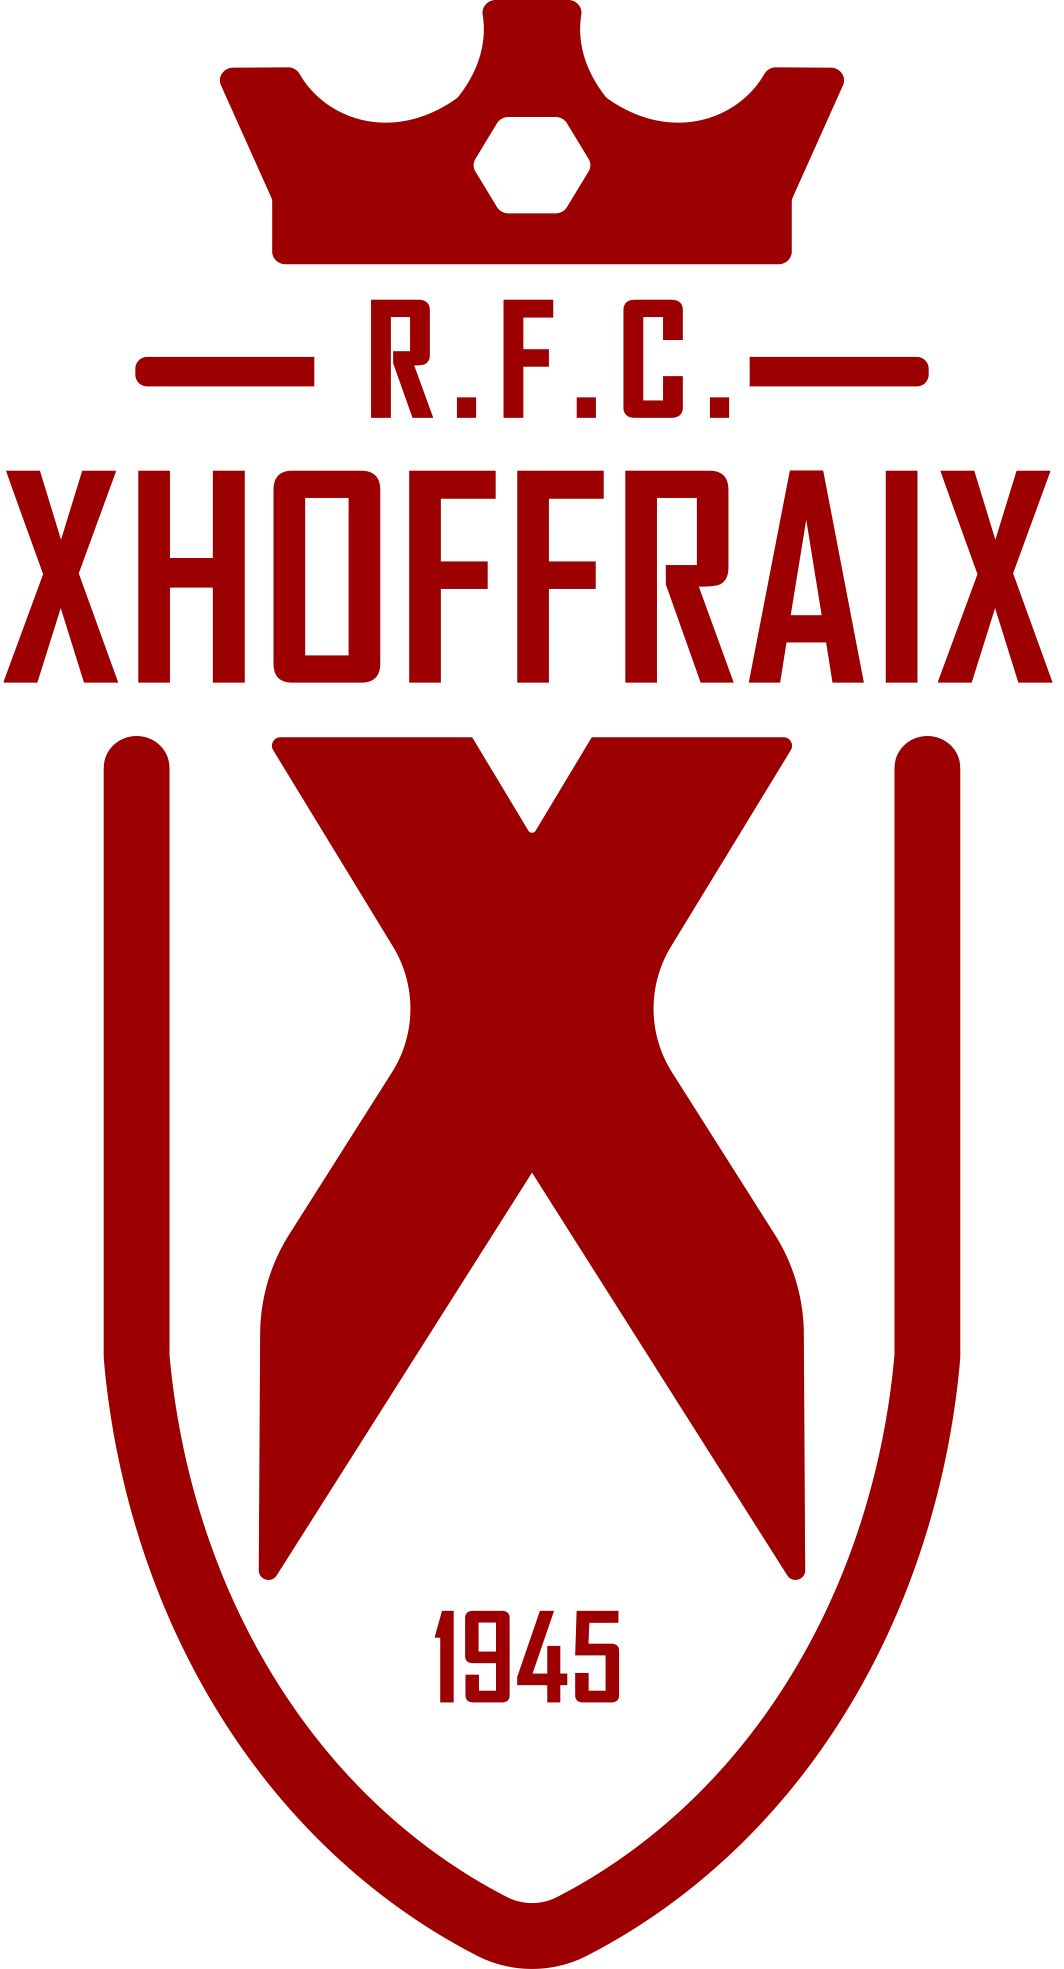 4 - Xhoffraix A